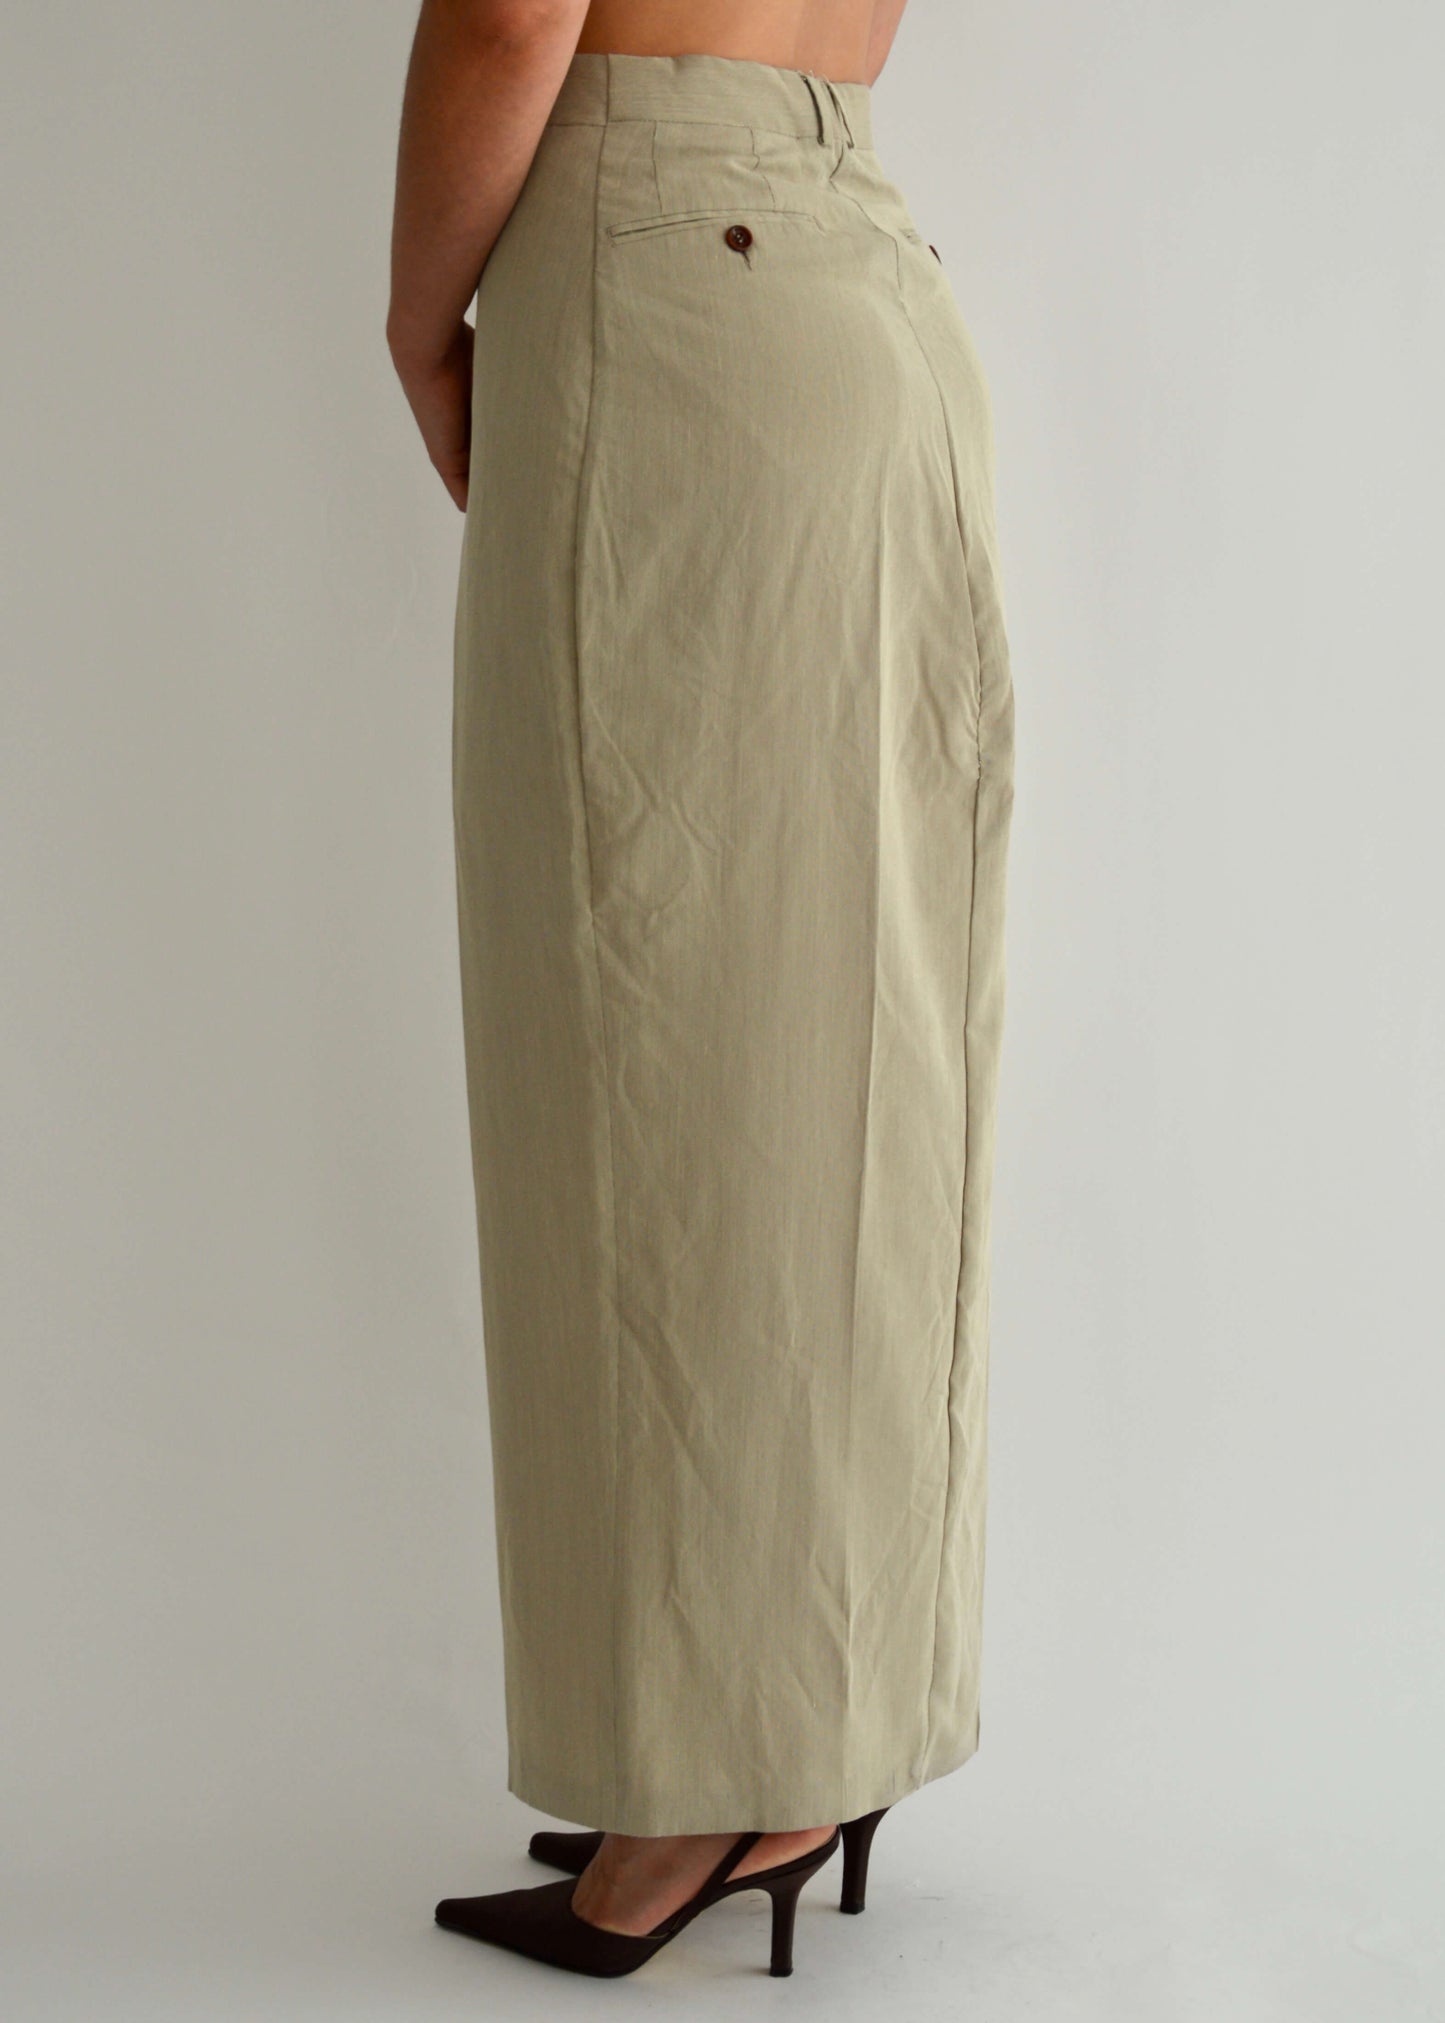 Long Skirt - Beige (M/L)